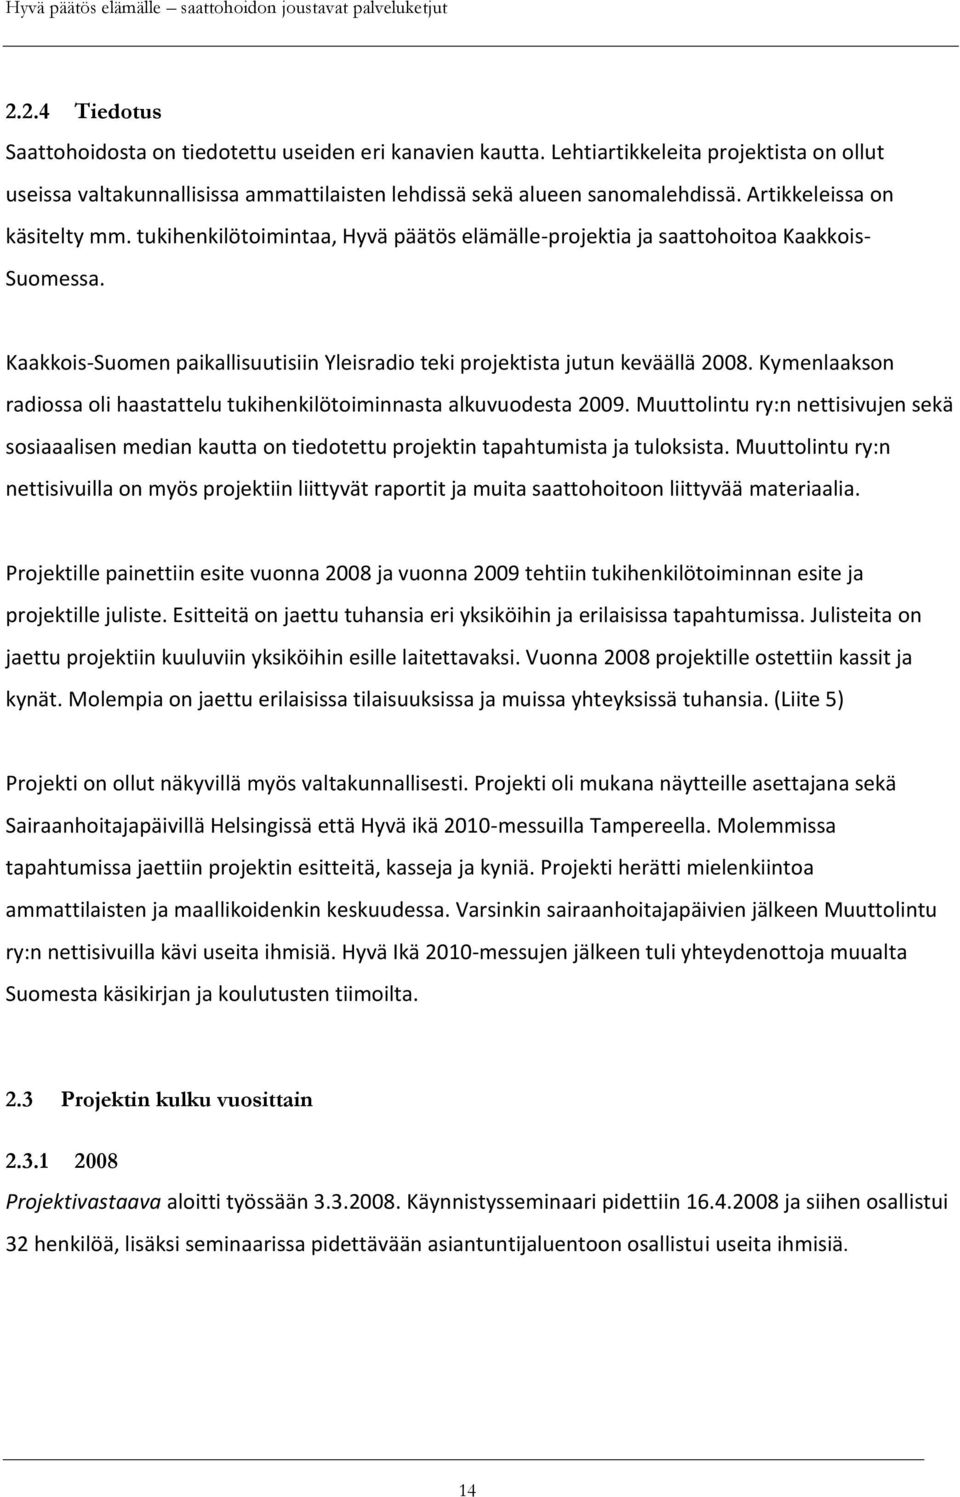 Kaakkois-Suomen paikallisuutisiin Yleisradio teki projektista jutun keväällä 2008. Kymenlaakson radiossa oli haastattelu tukihenkilötoiminnasta alkuvuodesta 2009.